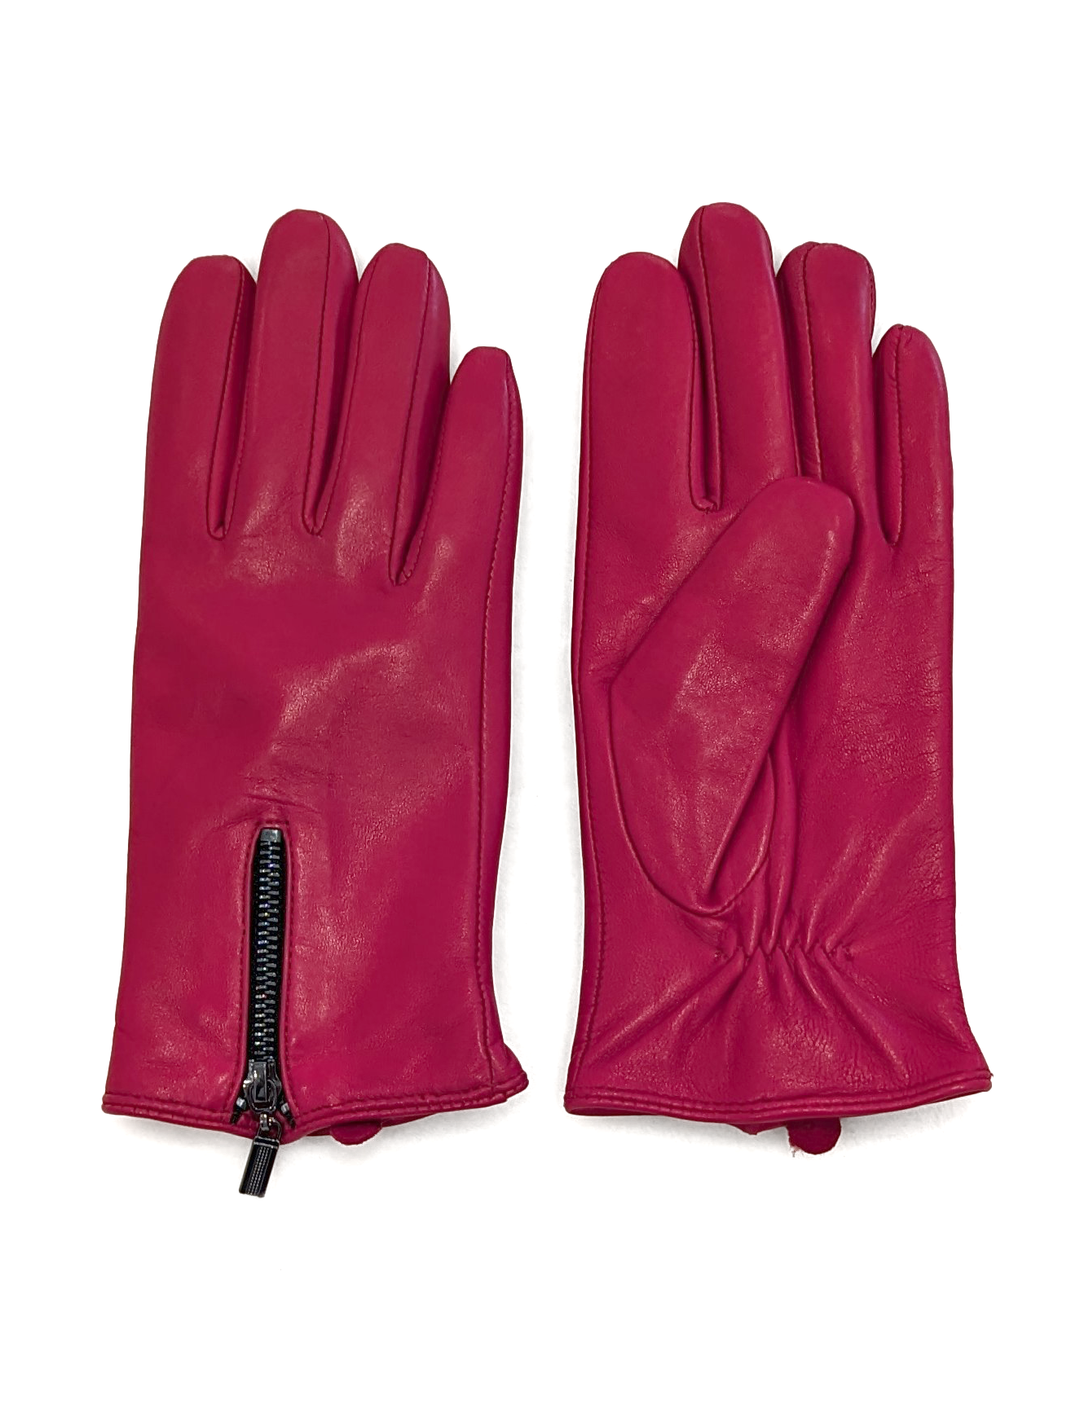 2687-2 Handschuh – Lammleder – Zubehör – Rot